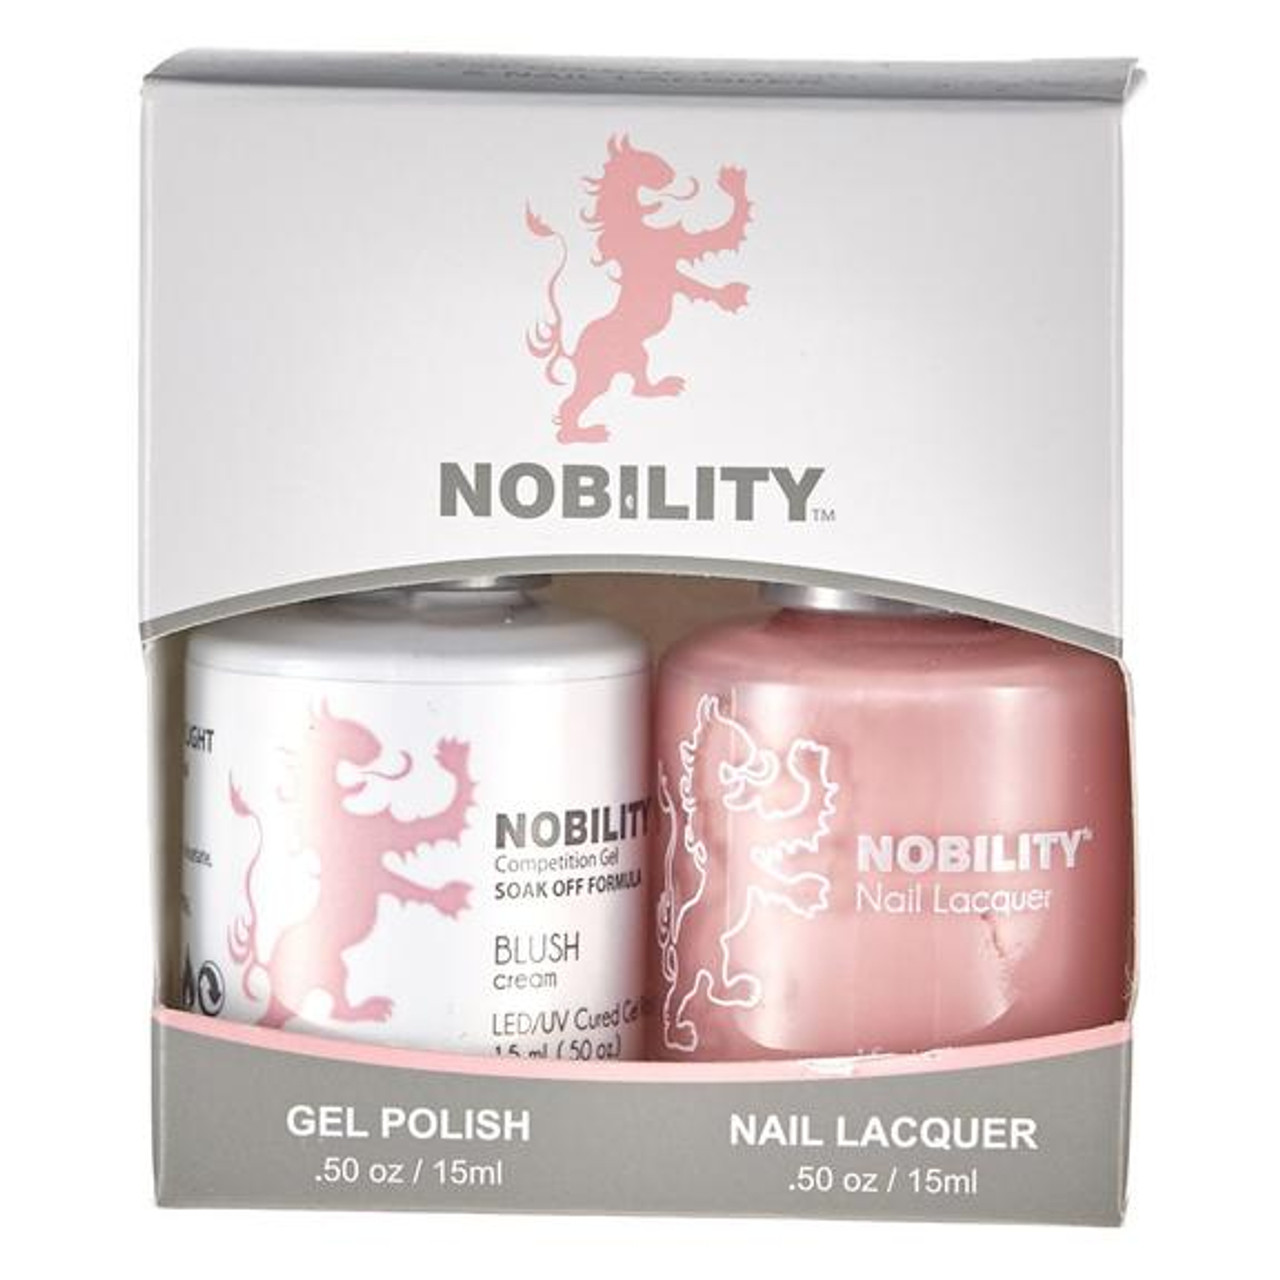 LeChat Nobility Gel Polish & Nail Lacquer Duo Set Blush - .5 oz / 15 ml